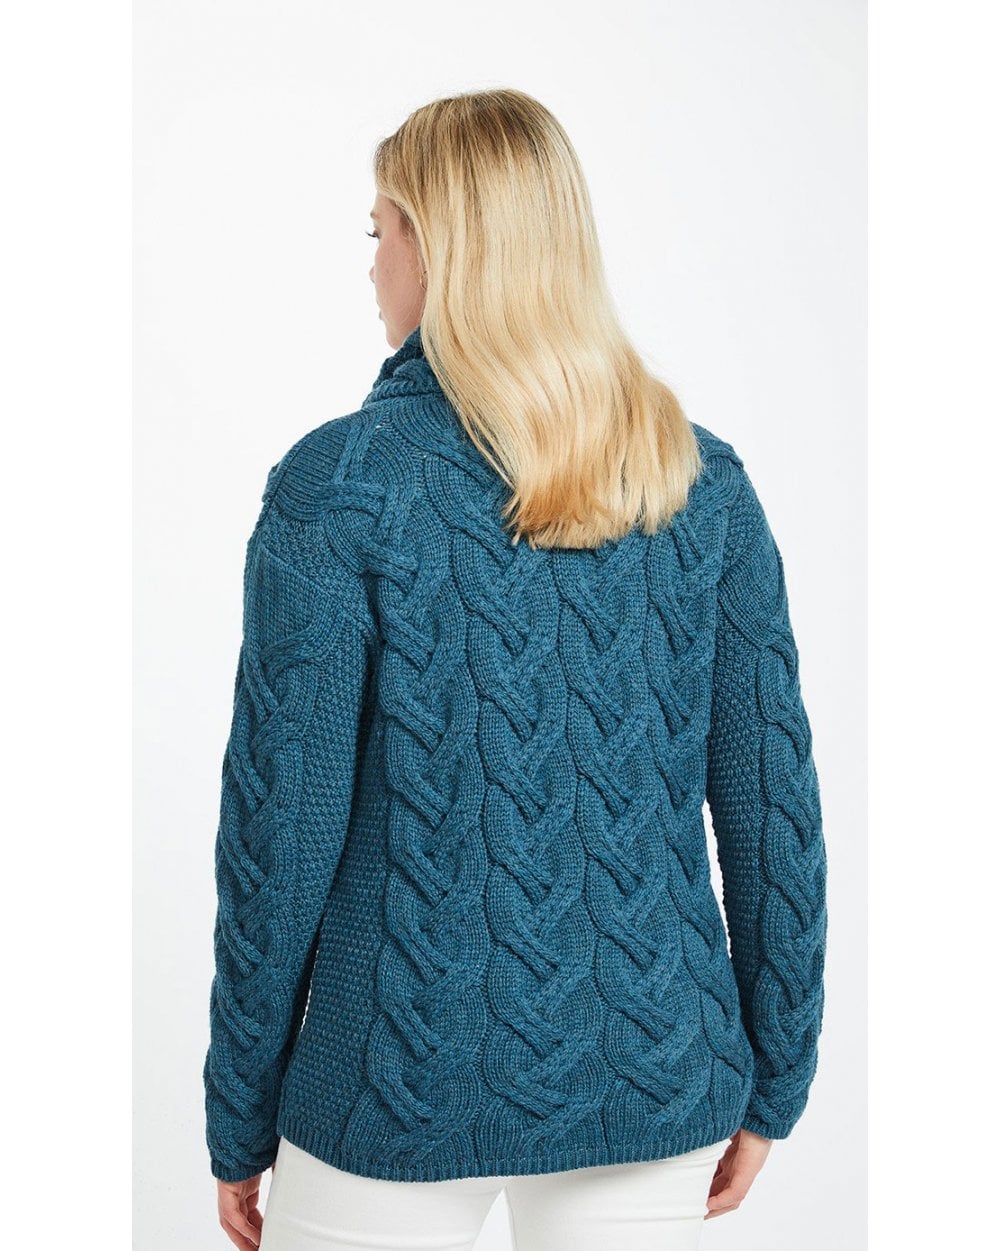 Kinsale Cable Aran Sweater